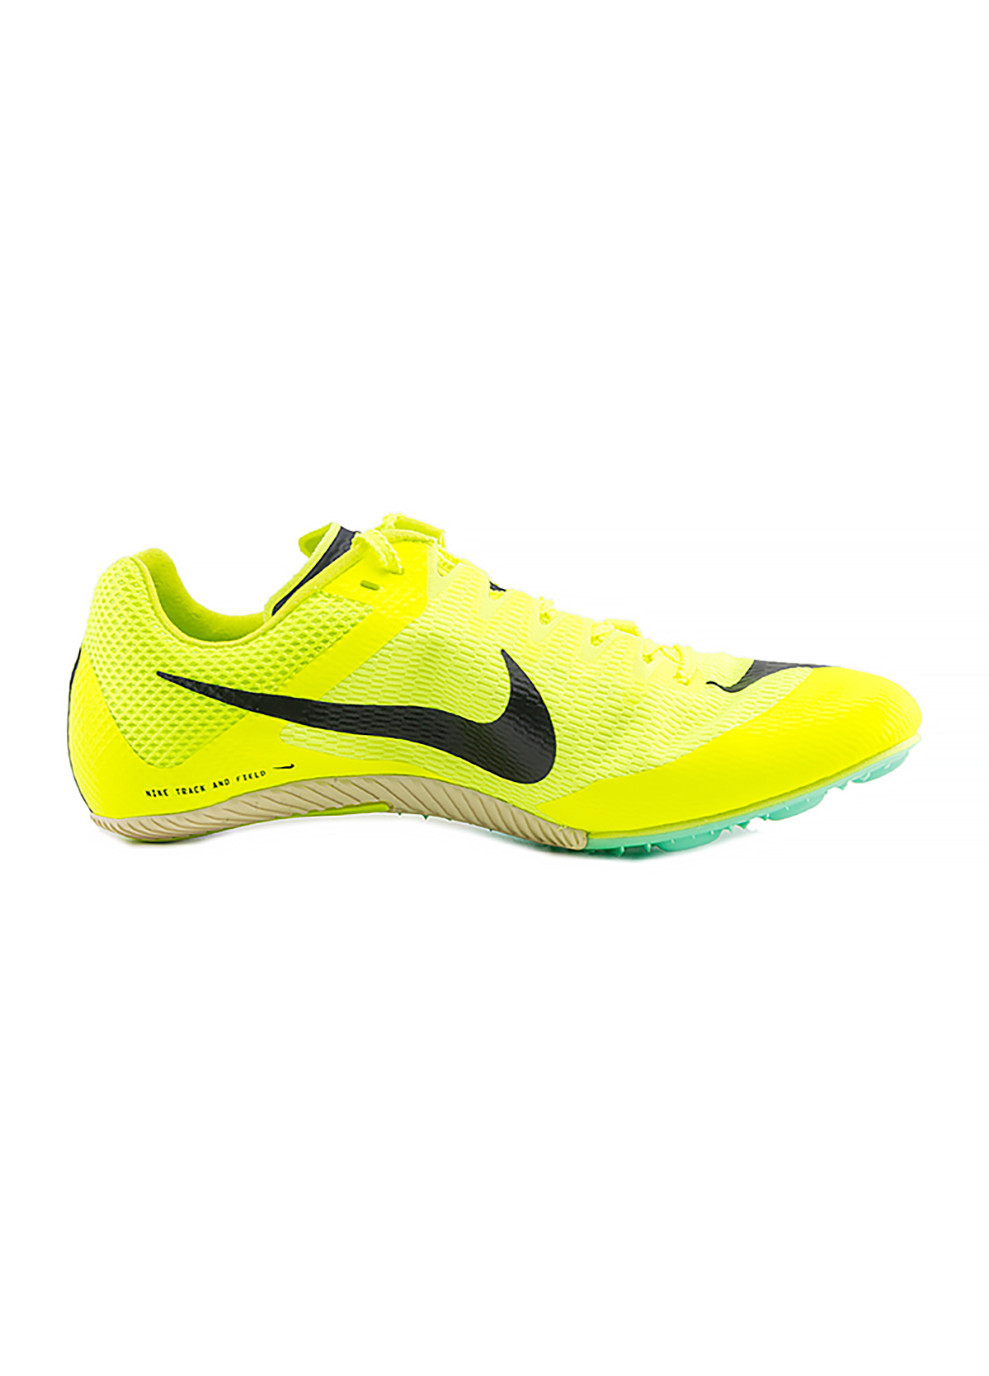 Салатовые демисезонные мужские кроссовки zoom rival sprint салатовый Nike